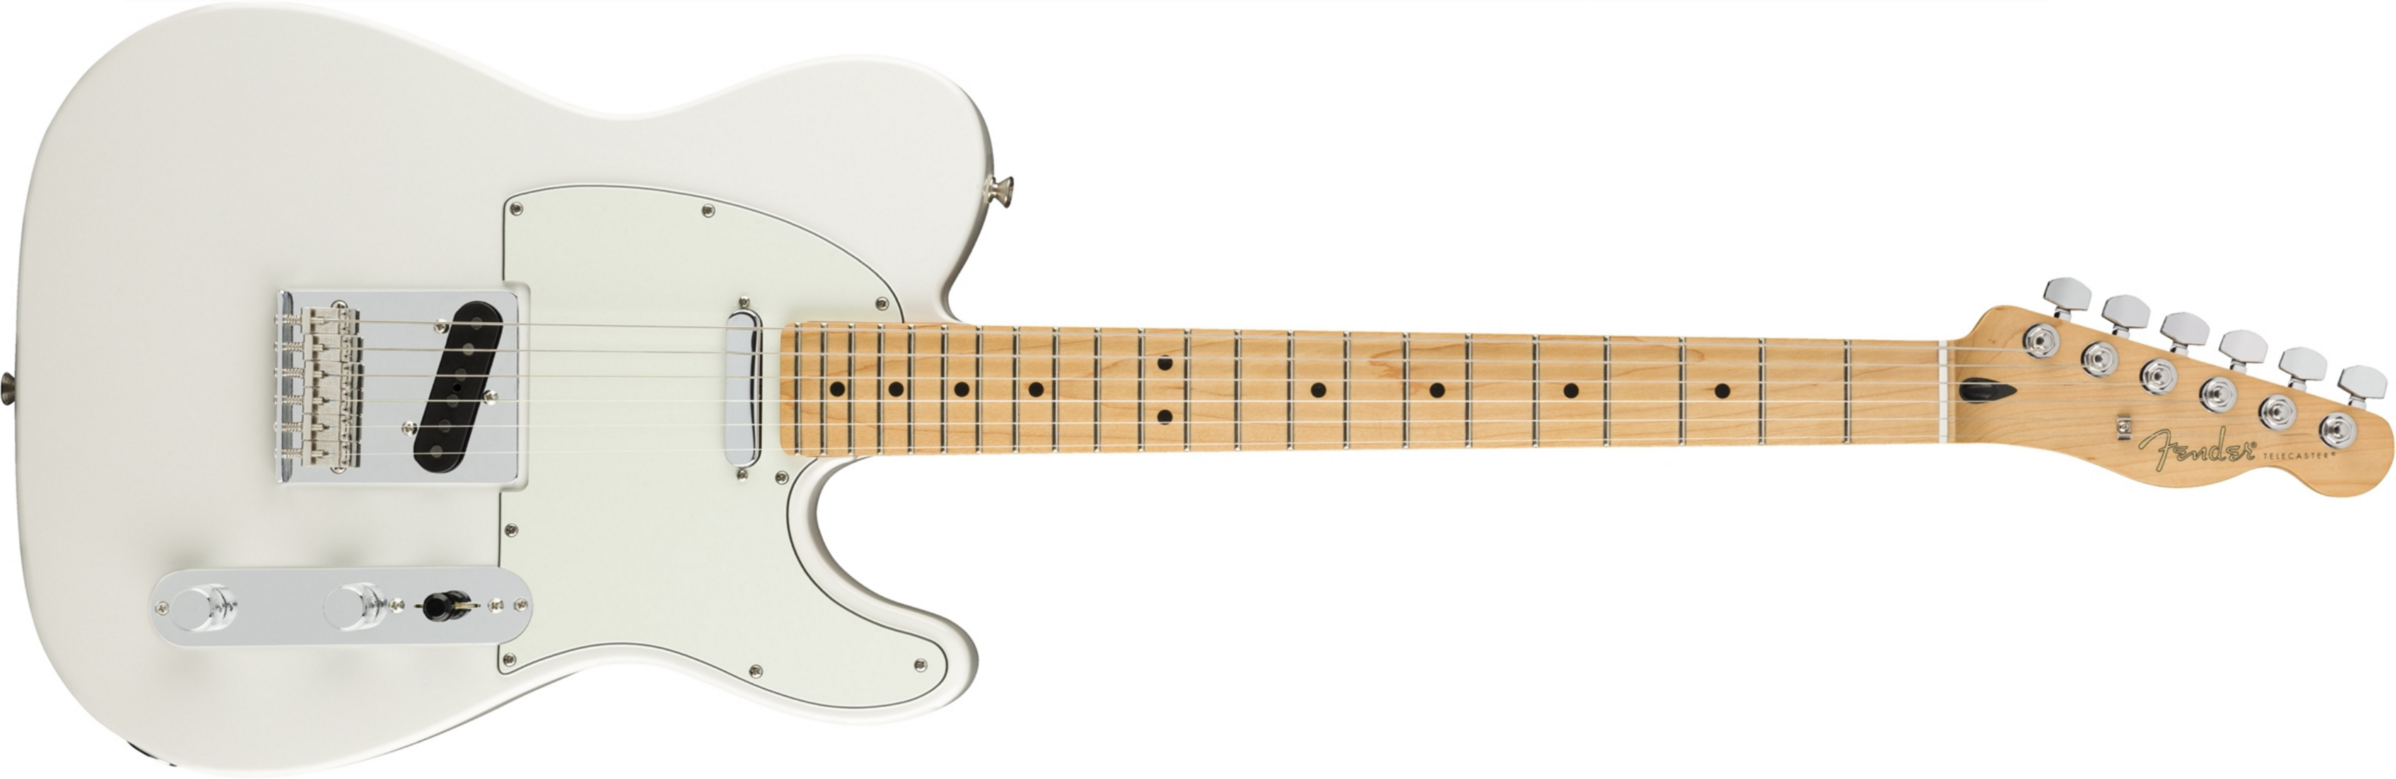 Fender Tele Player Mex Mn - Polar White - E-Gitarre in Teleform - Main picture